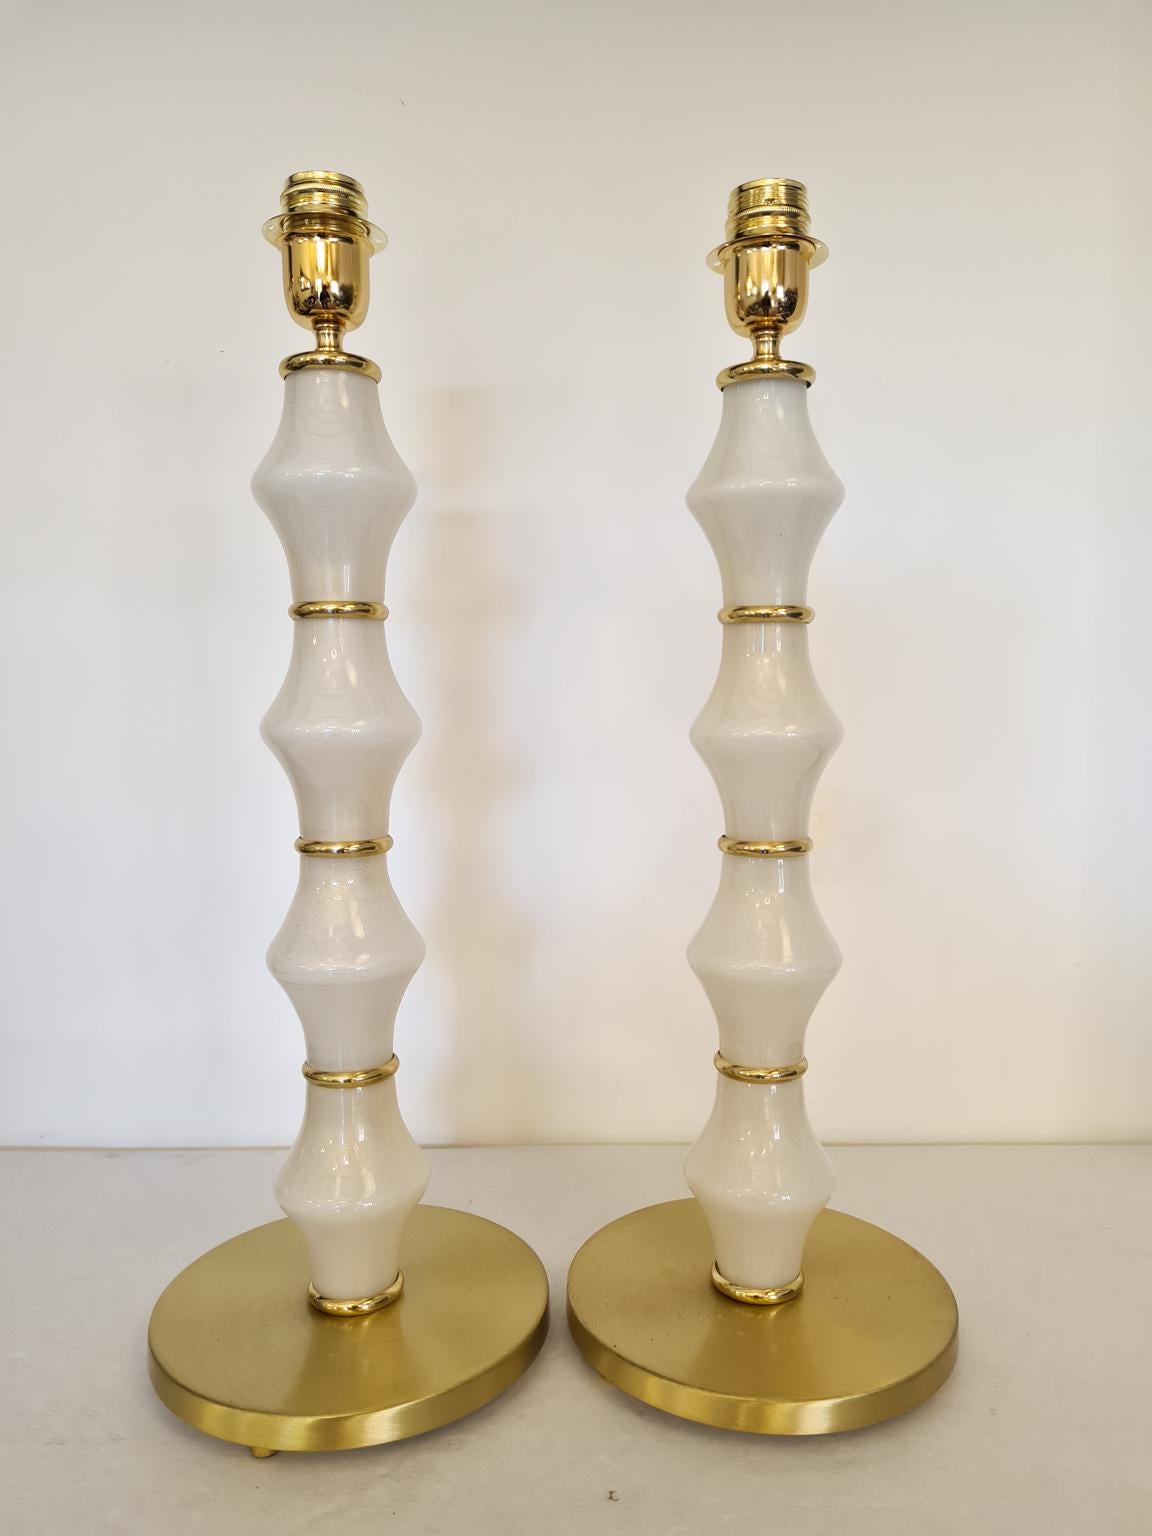 Exklusive Paar Murano Glas Tischlampen Weißgold Farbe und Gold Chrom Ringe.
Die Lampe wurde mit großer Sorgfalt und Präzision von unserem Glasermeister Alberto Donà aus Murano hergestellt.
Die Produkte sind vollständig handgefertigt und im Stil